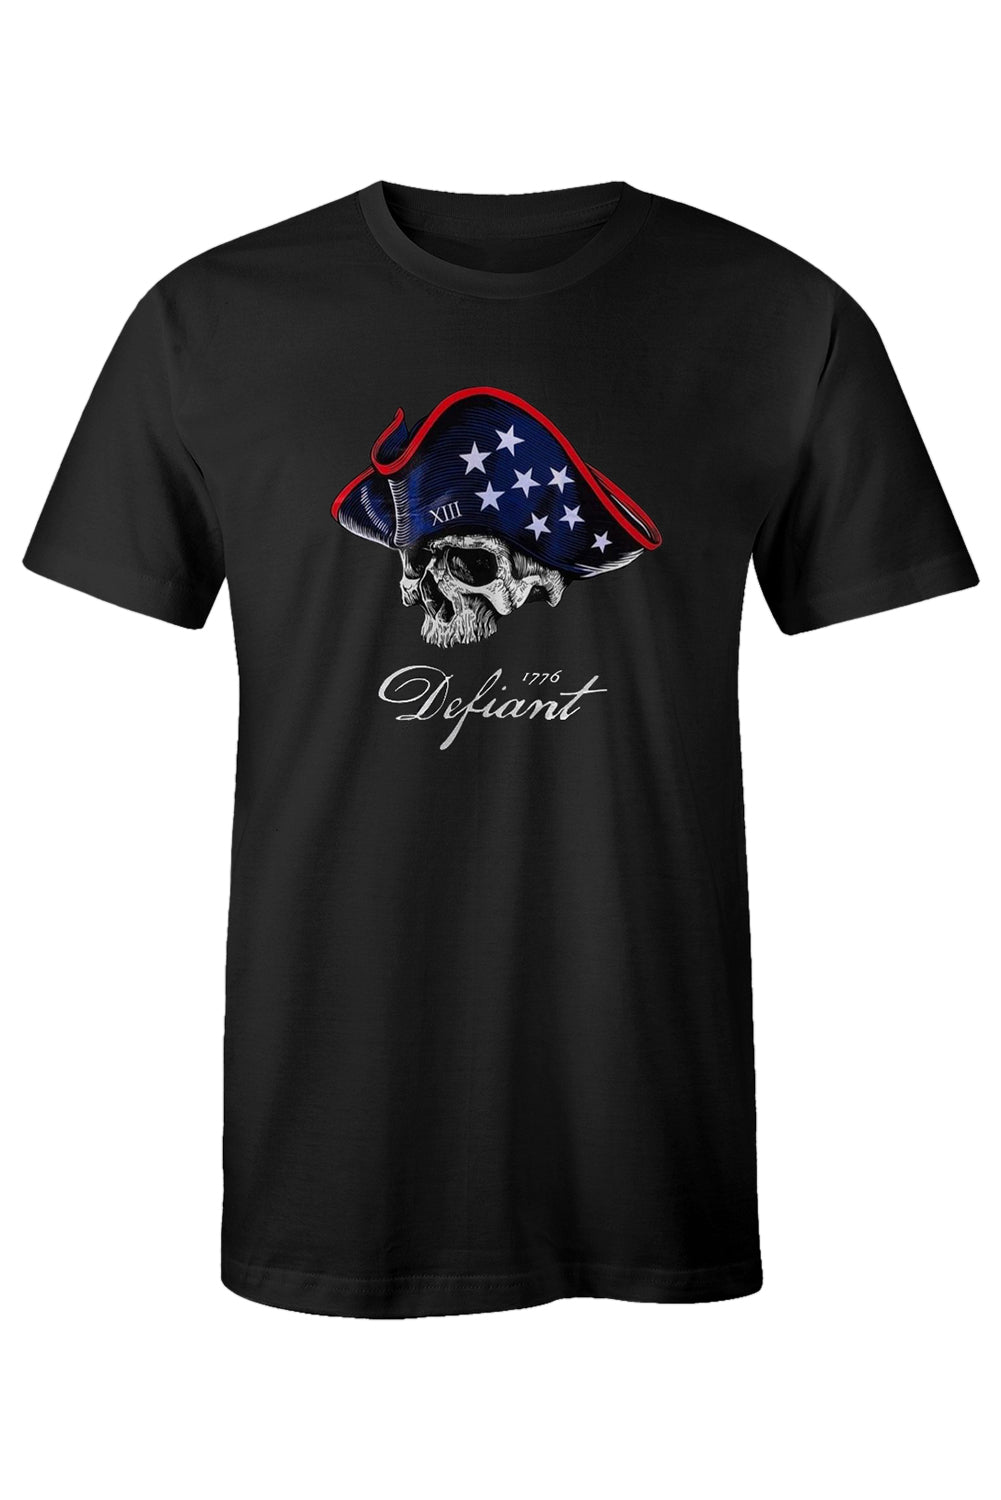 Black American Flag Skull Graphic Print Short Sleeve Men's T Shirt Men's Tops JT's Designer Fashion